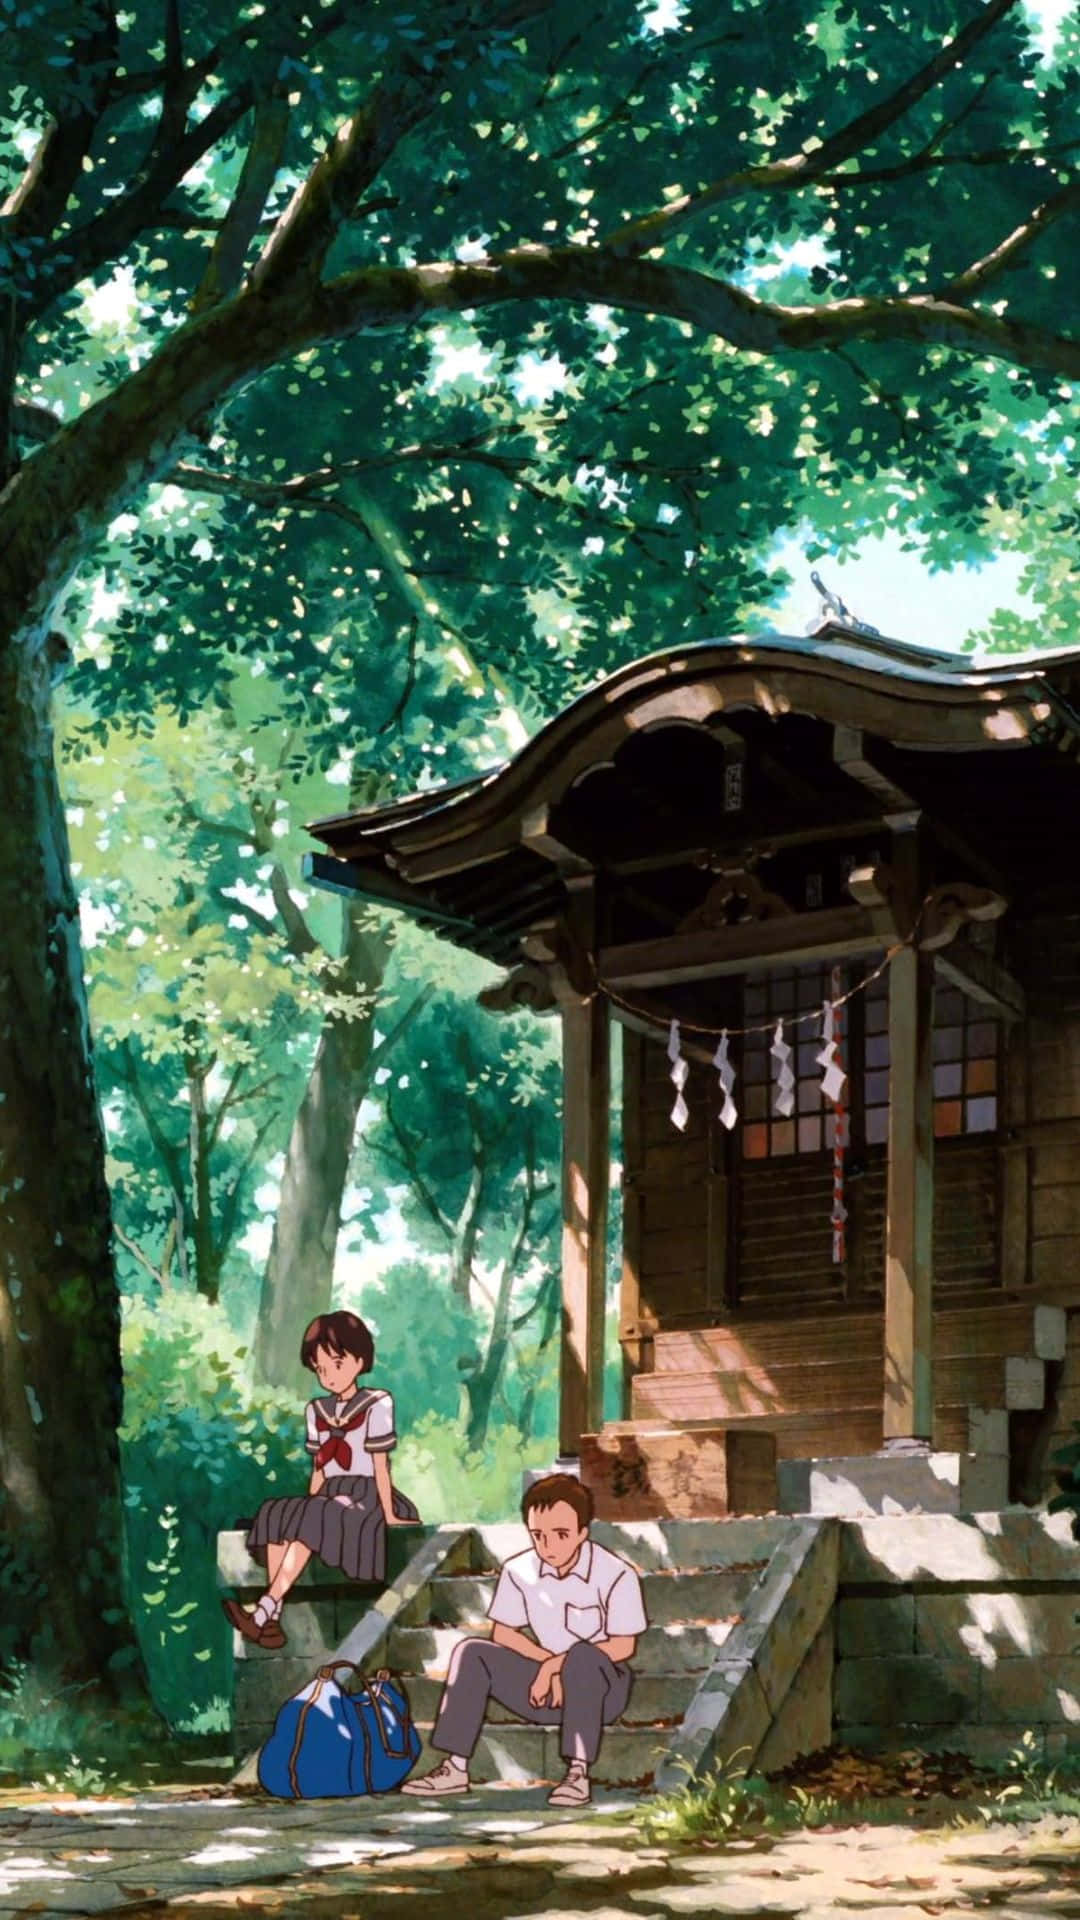 Wallpaperomfamna Ditt Inre Äventyr Och Gör Dig Redo Att Avslöja Den Magiska Världen Av Studio Ghibli Med En Ghibli-telefonbakgrund. Wallpaper